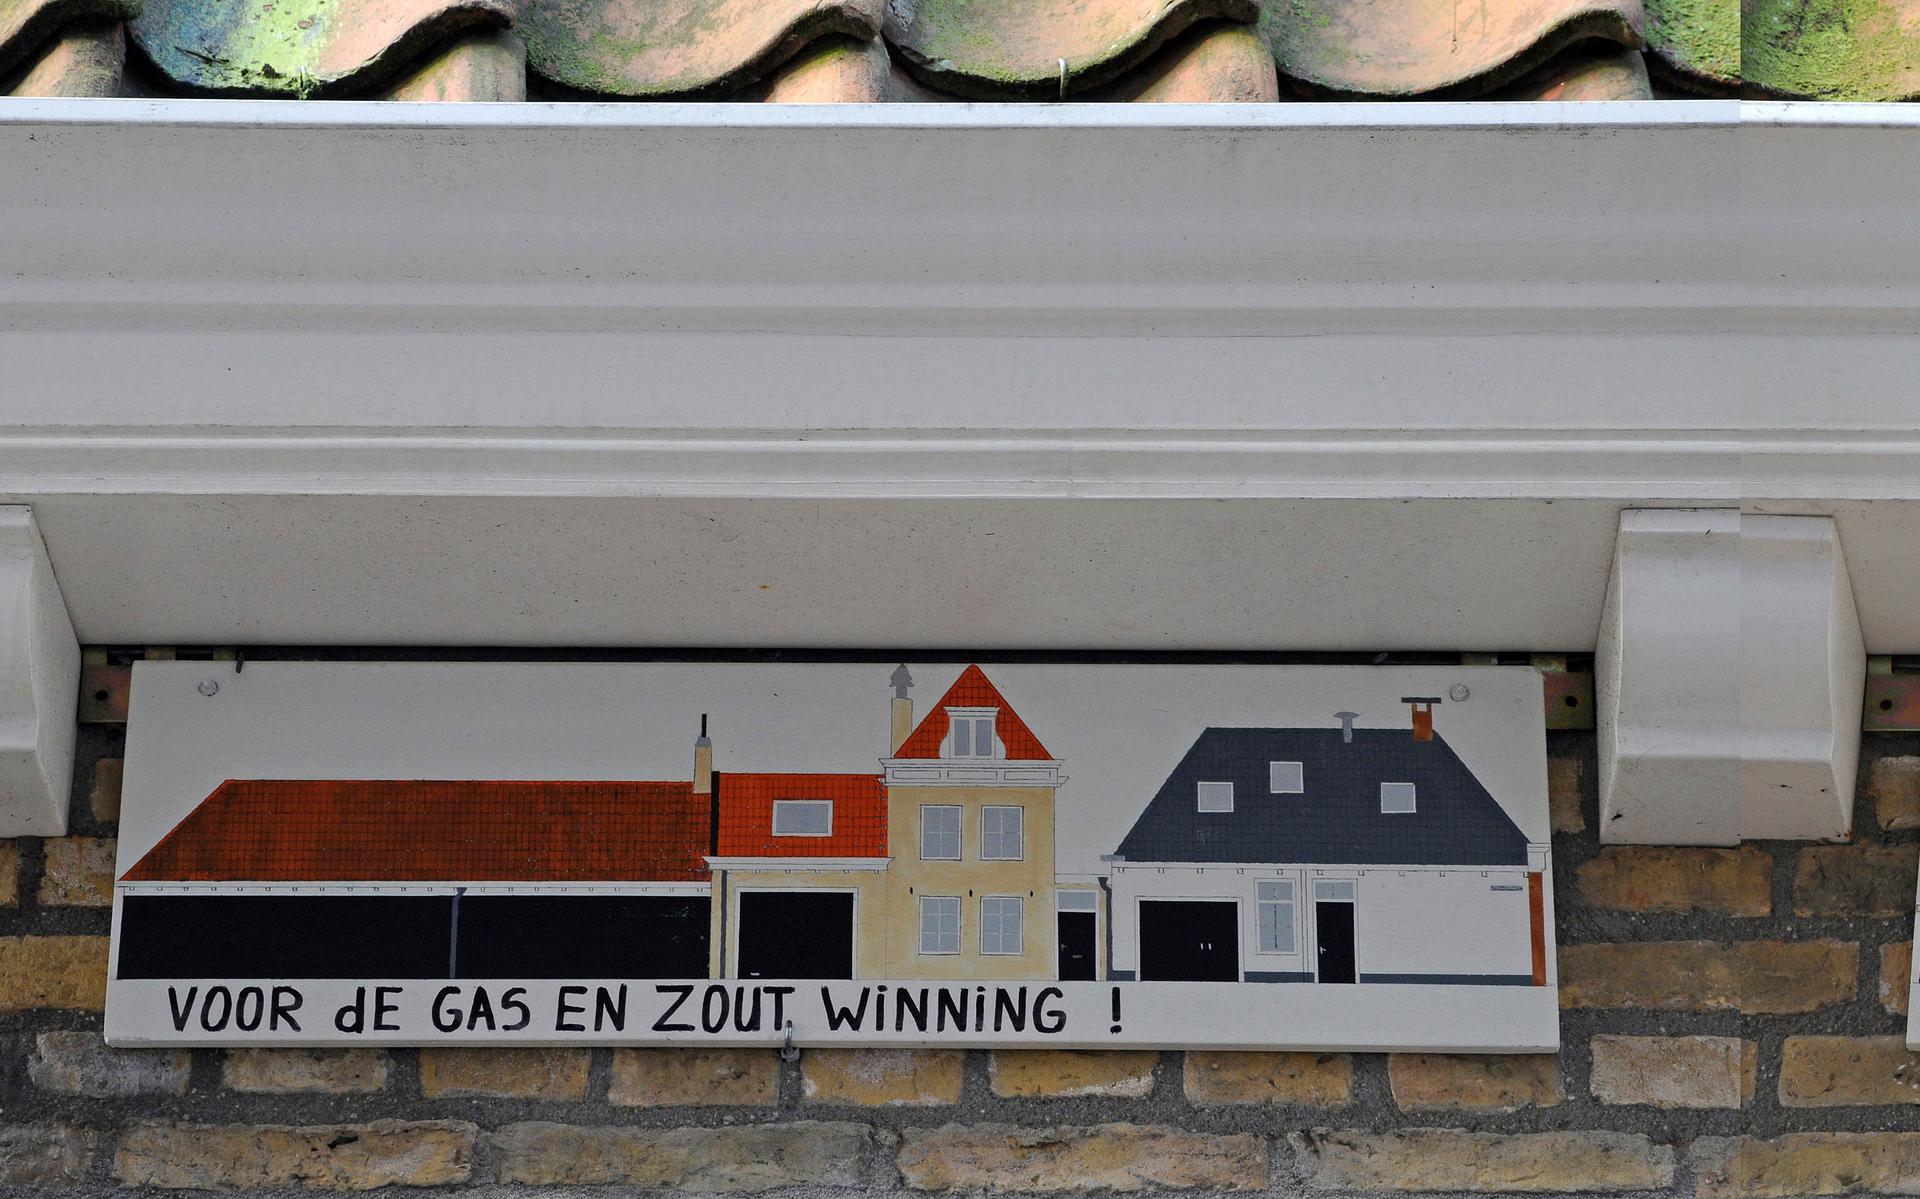 Een bewoner in Harlingen bracht de zout- en gaswinning in beeld 